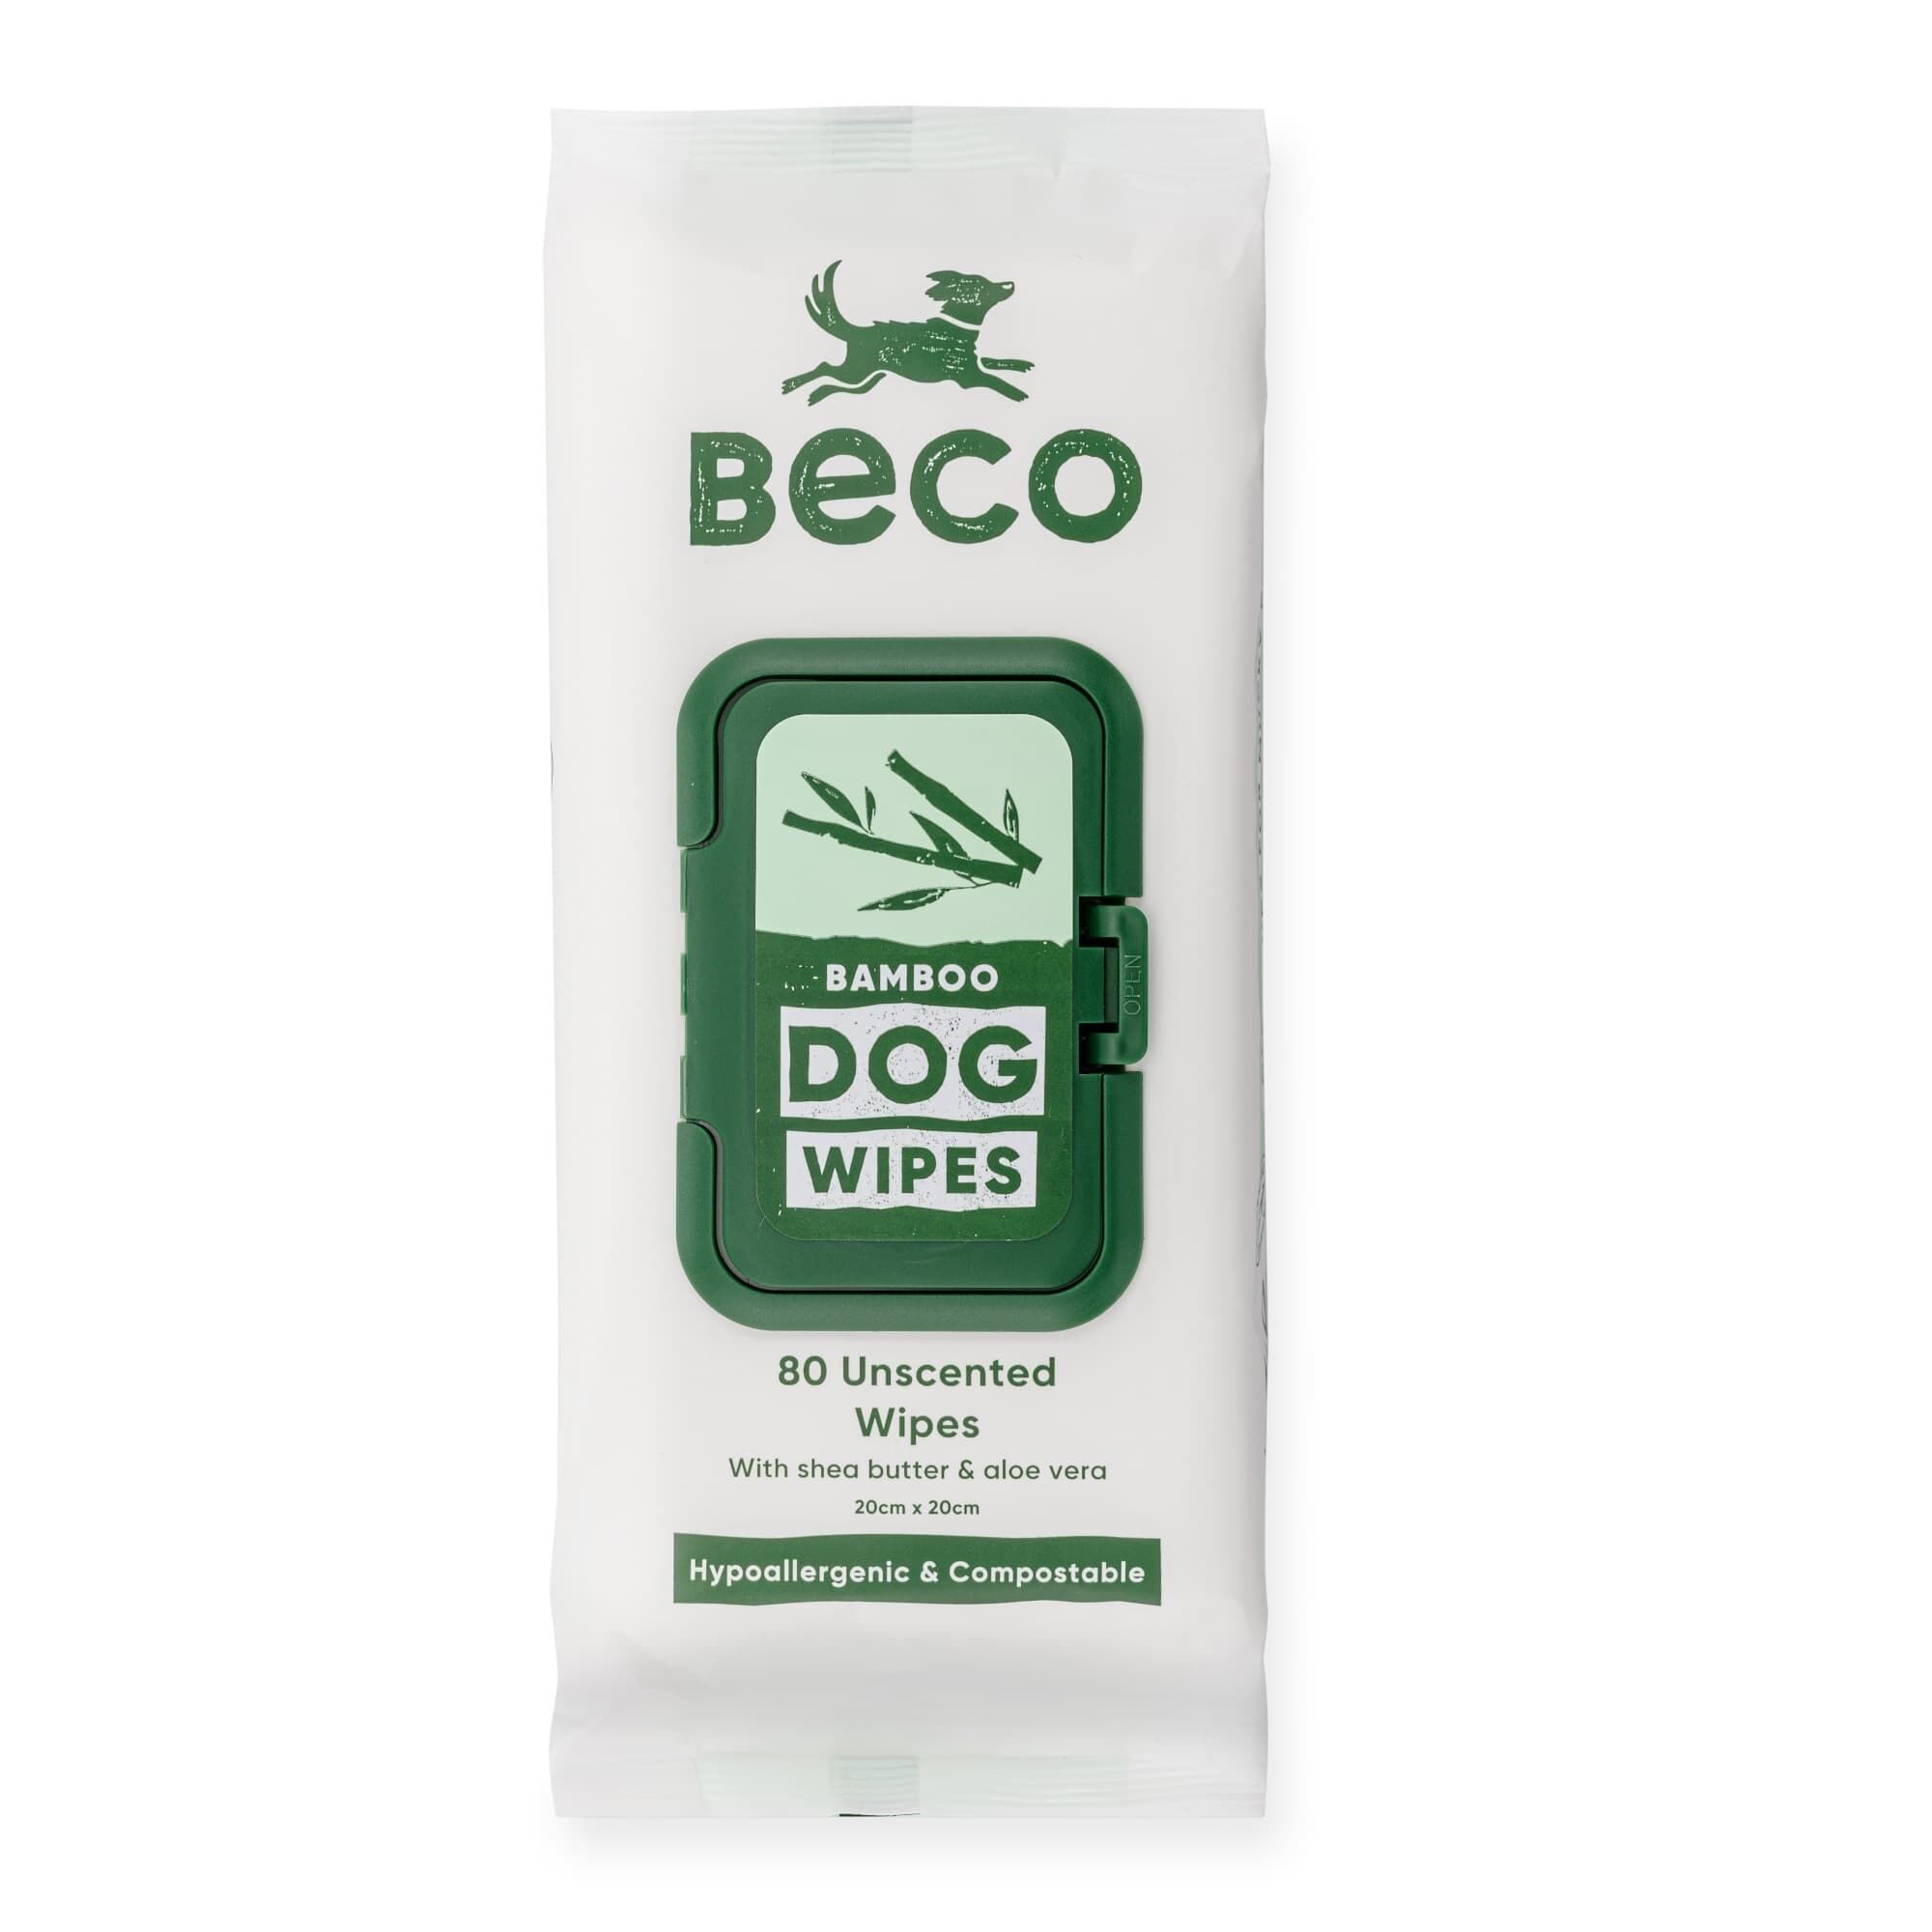 Beco-Reinigungstuecher-Bambus-ohne-Duft-fuer-saubere-Hunde-wieder-verschließbare-Verpackung-auf-weiß-BT-75606